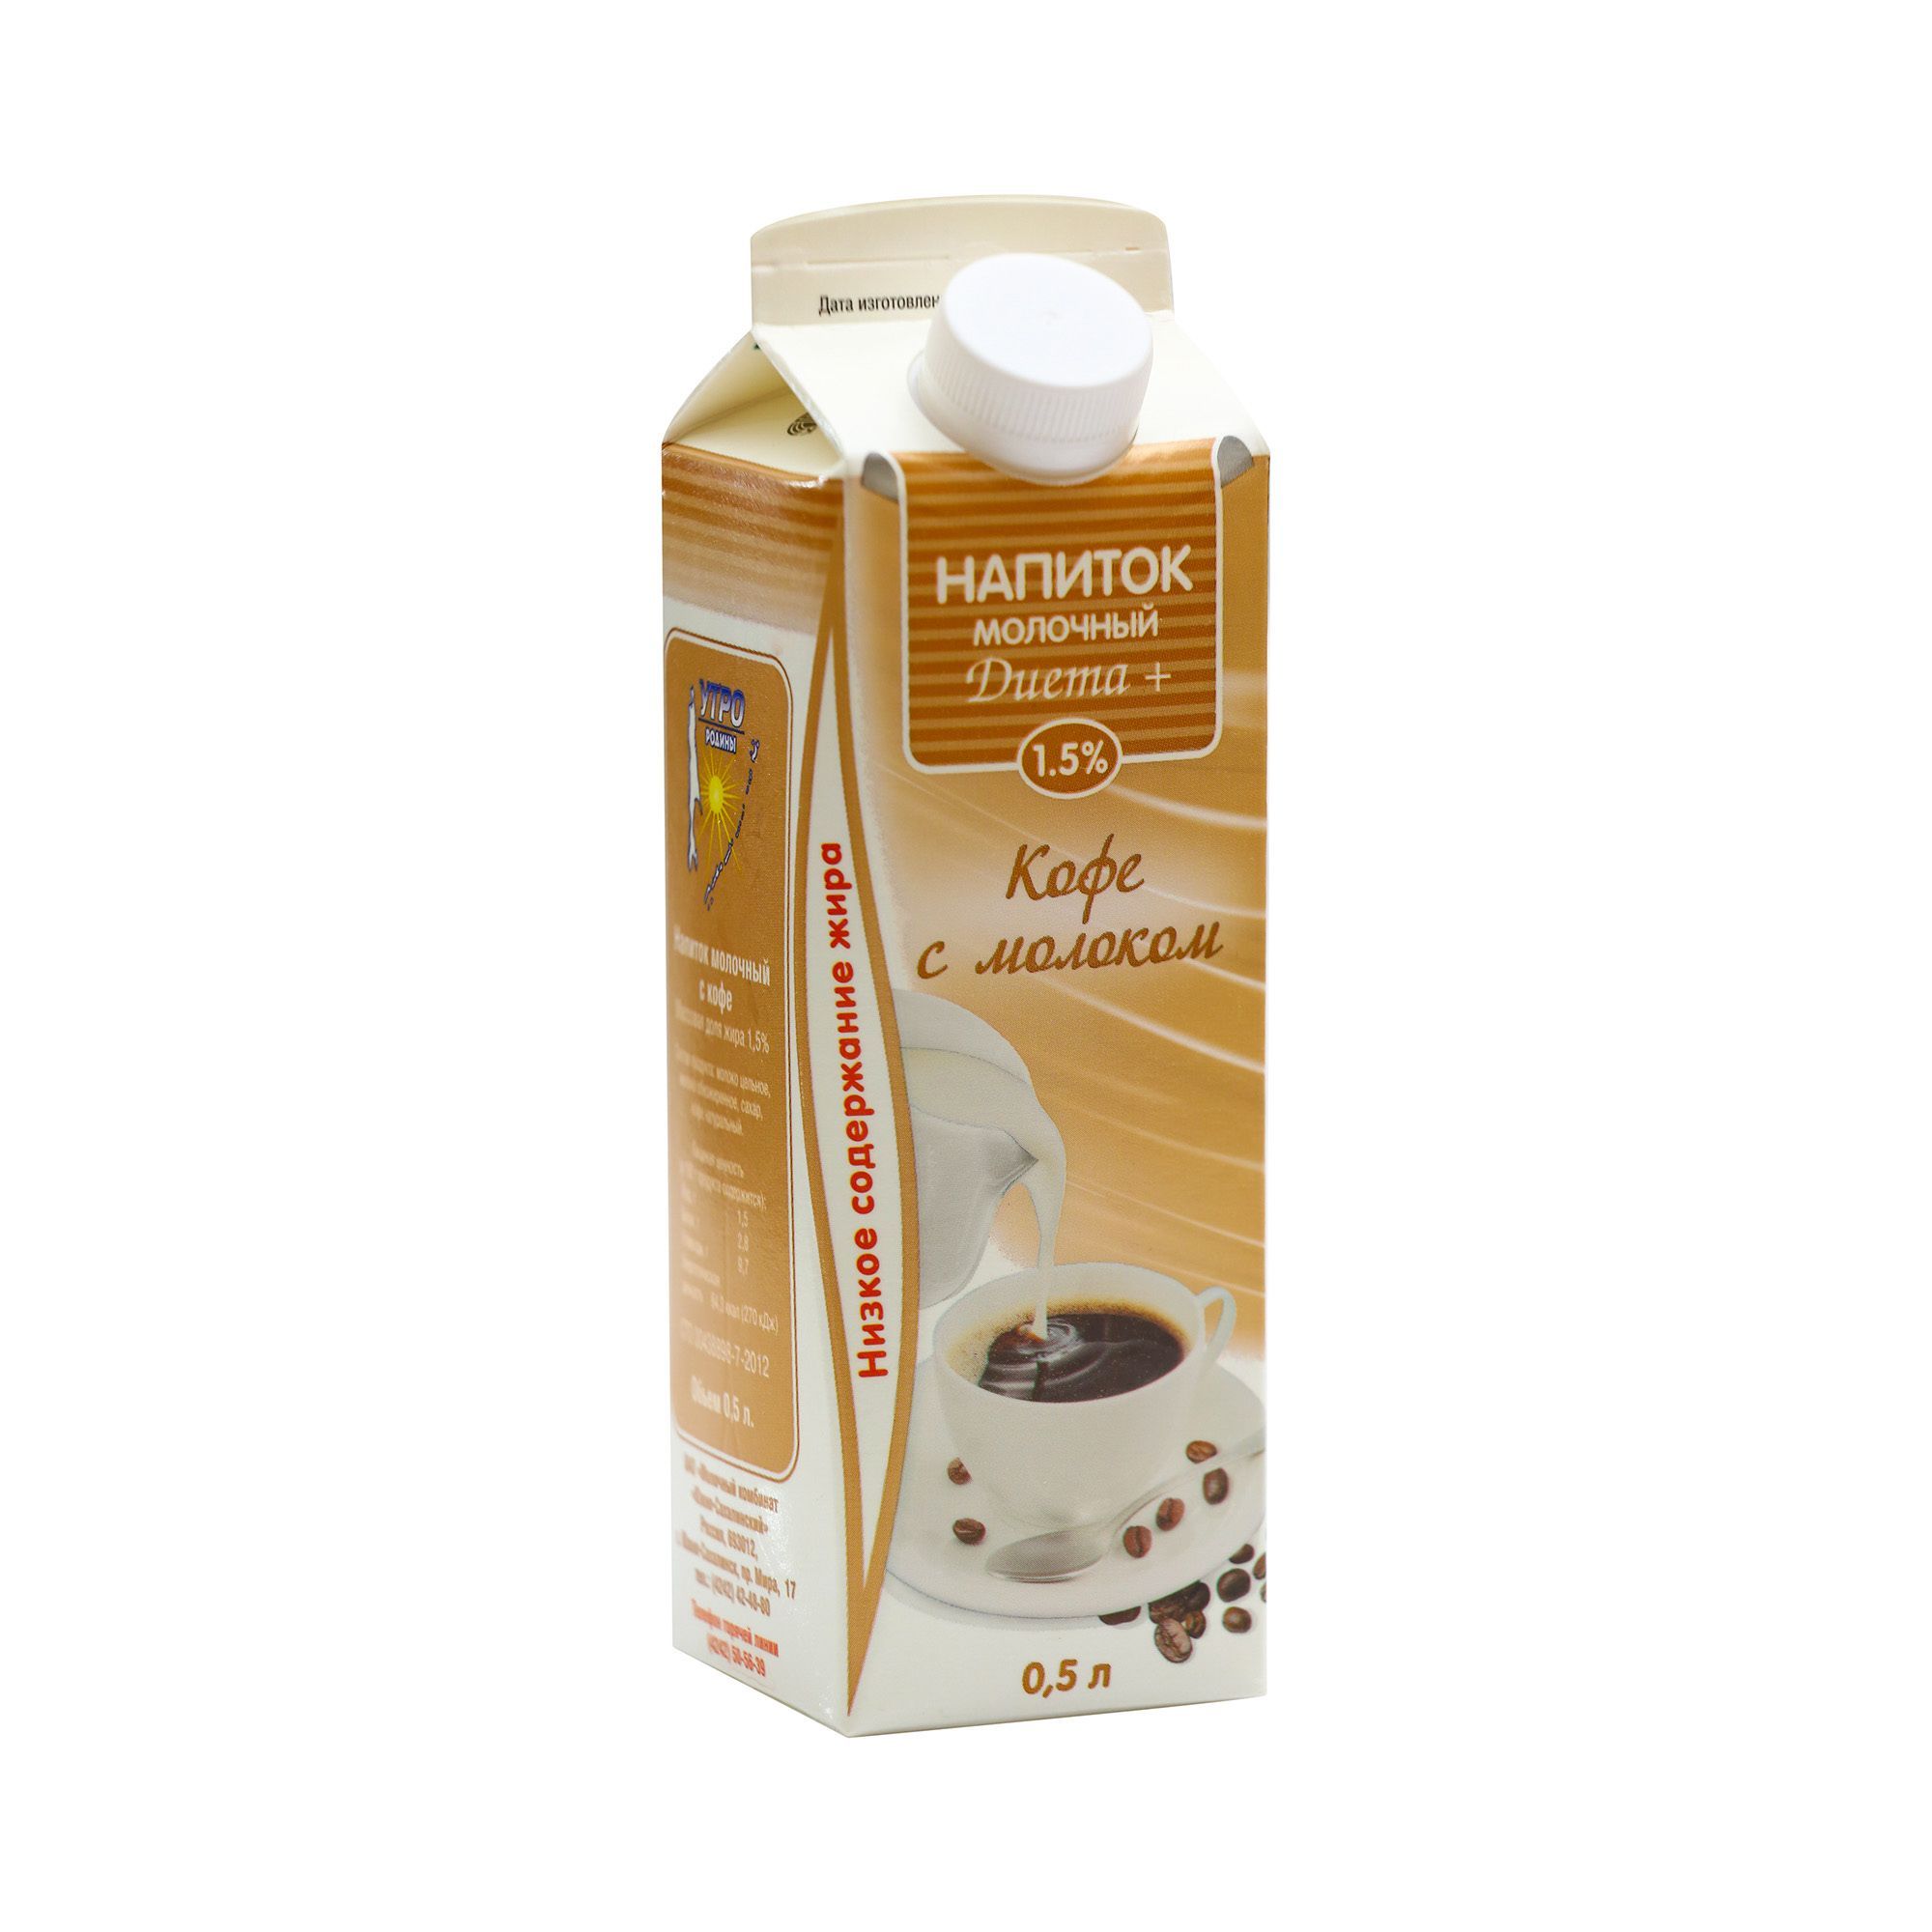 Купить кофе с молоком в капсулах в Москве с быстрой доставкой - лучшие предложения от производителей